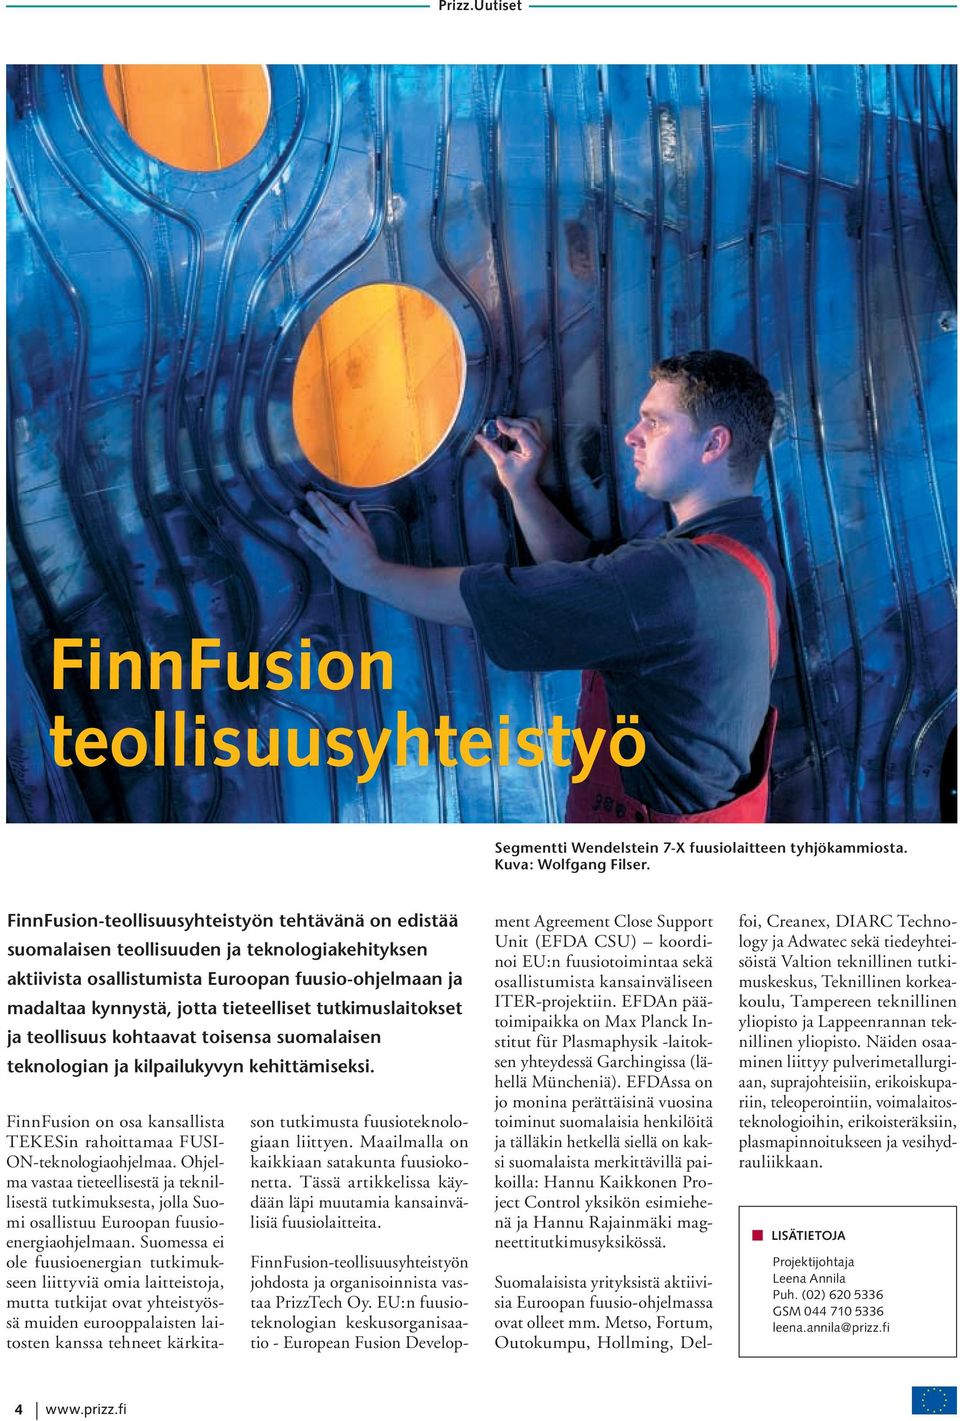 tutkimuslaitokset ja teollisuus kohtaavat toisensa suomalaisen teknologian ja kilpailukyvyn kehittämiseksi. FinnFusion on osa kansallista TEKESin rahoittamaa FUSI- ON-teknologiaohjelmaa.